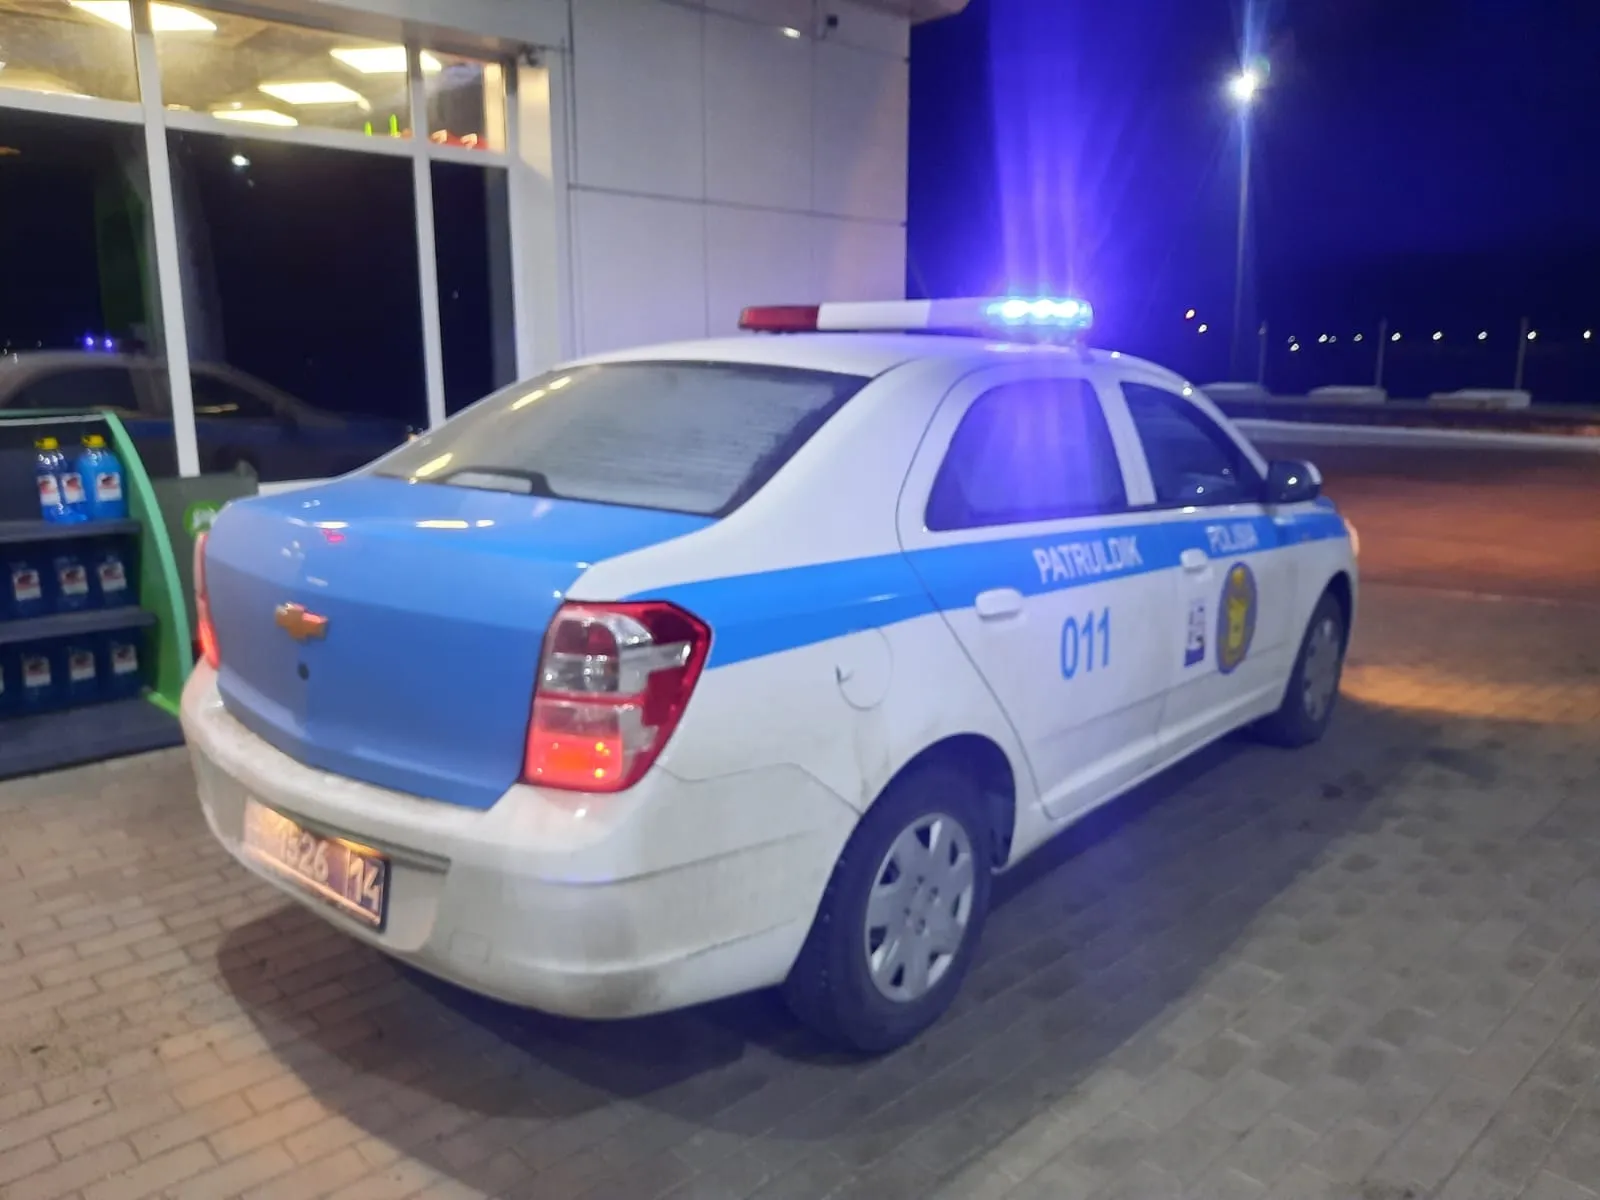 В Павлодаре оштрафованы 1551 водитель за нарушение тонировки и ограничение видимости фото taspanews.kz от 06/10/2024 17:56:26 фото на taspanews.kz от 10 июня 2024 17:56